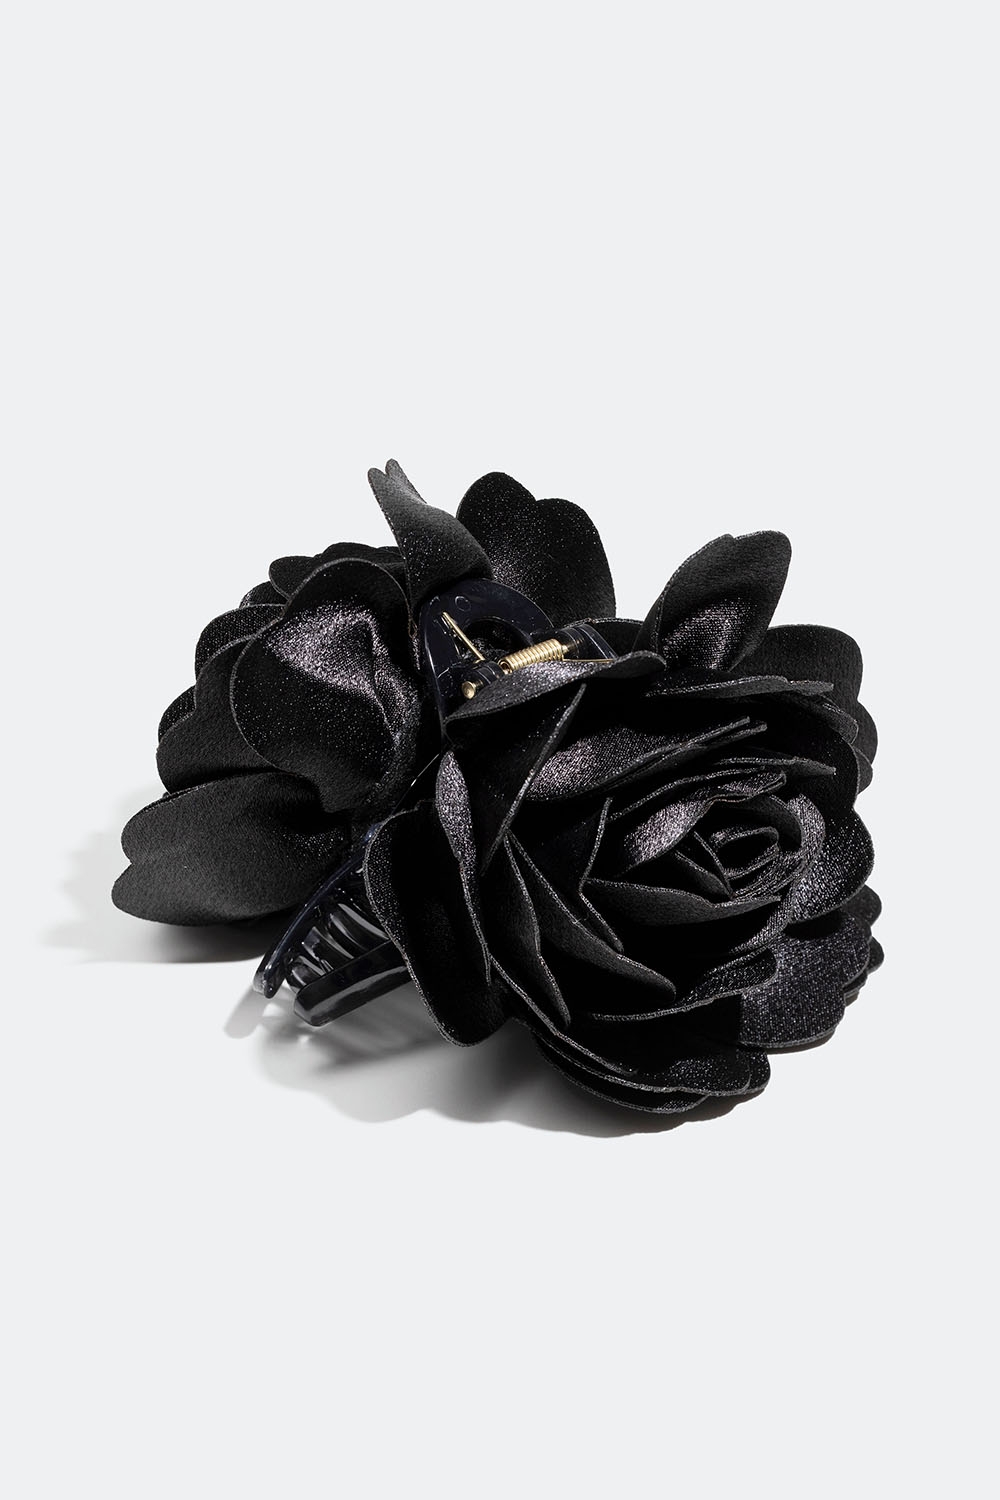 Hiussolki, jossa musta kukka ryhmässä Hiustuotteet / Hiuspinnit ja -klipsit / Hiusklipsit @ Glitter (331001579000)